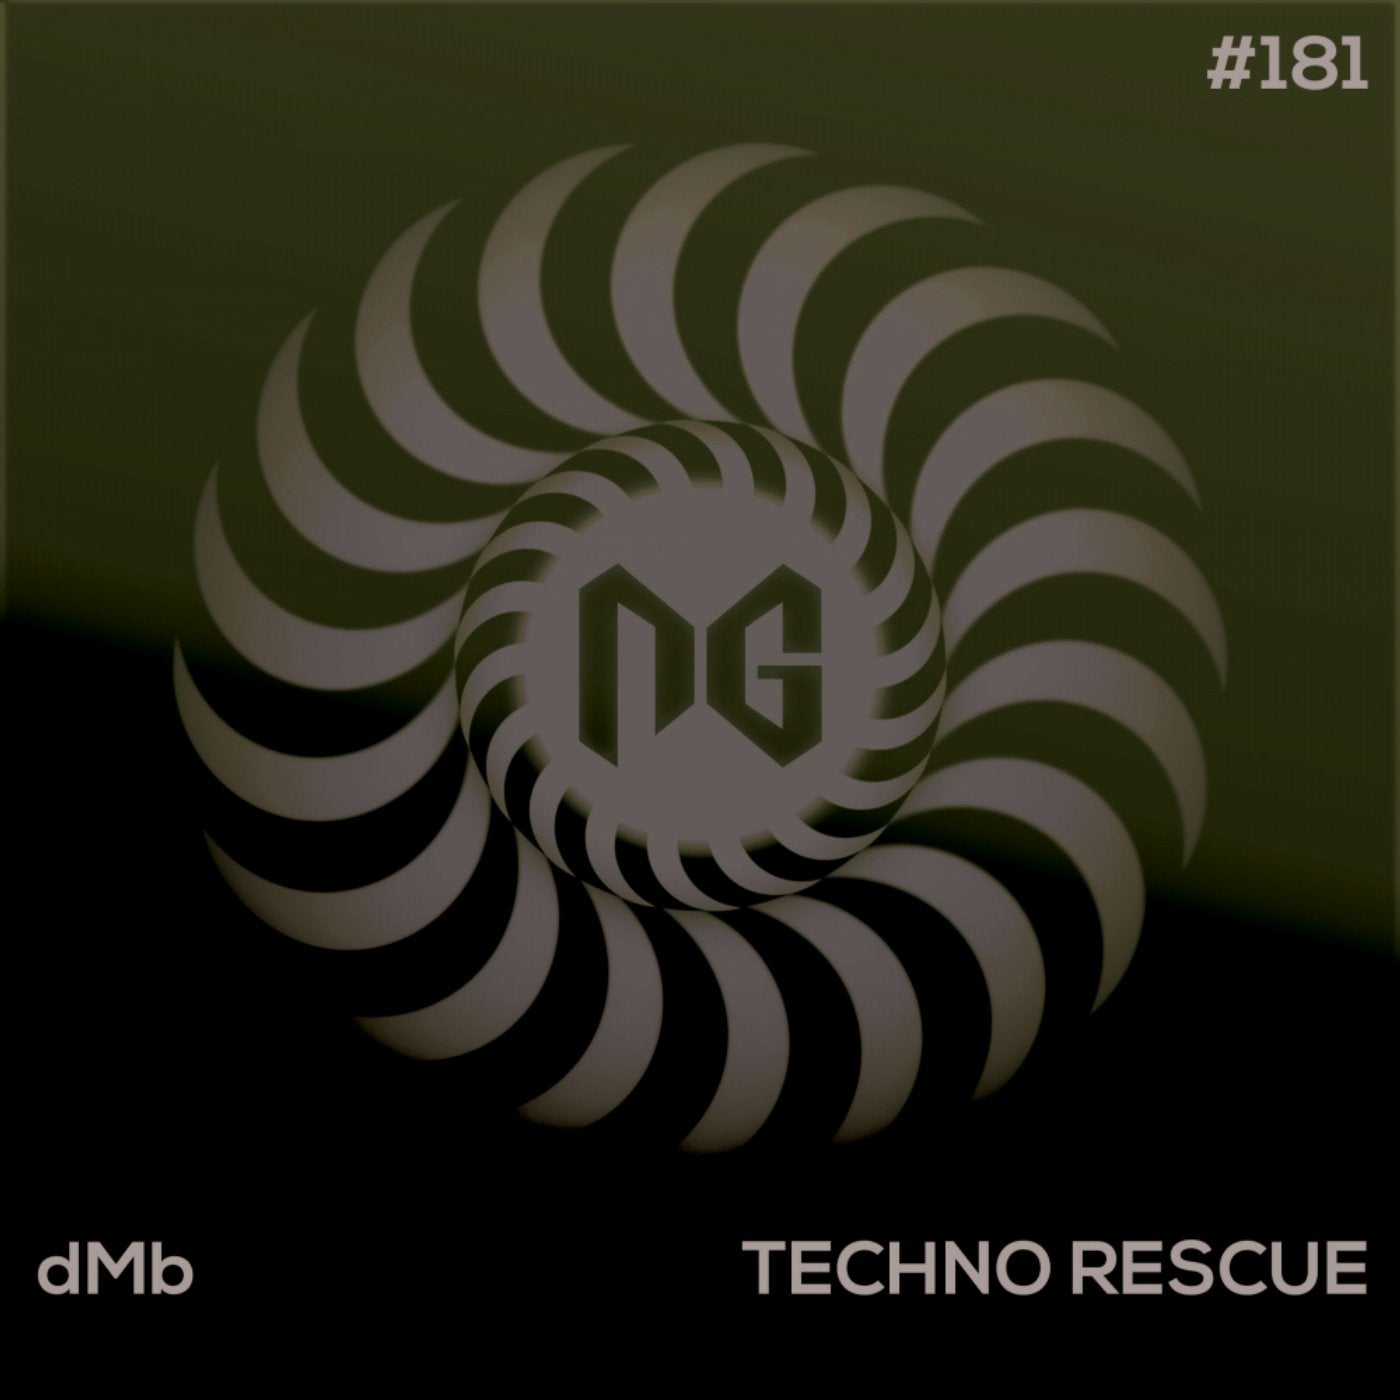 Techno Rescue